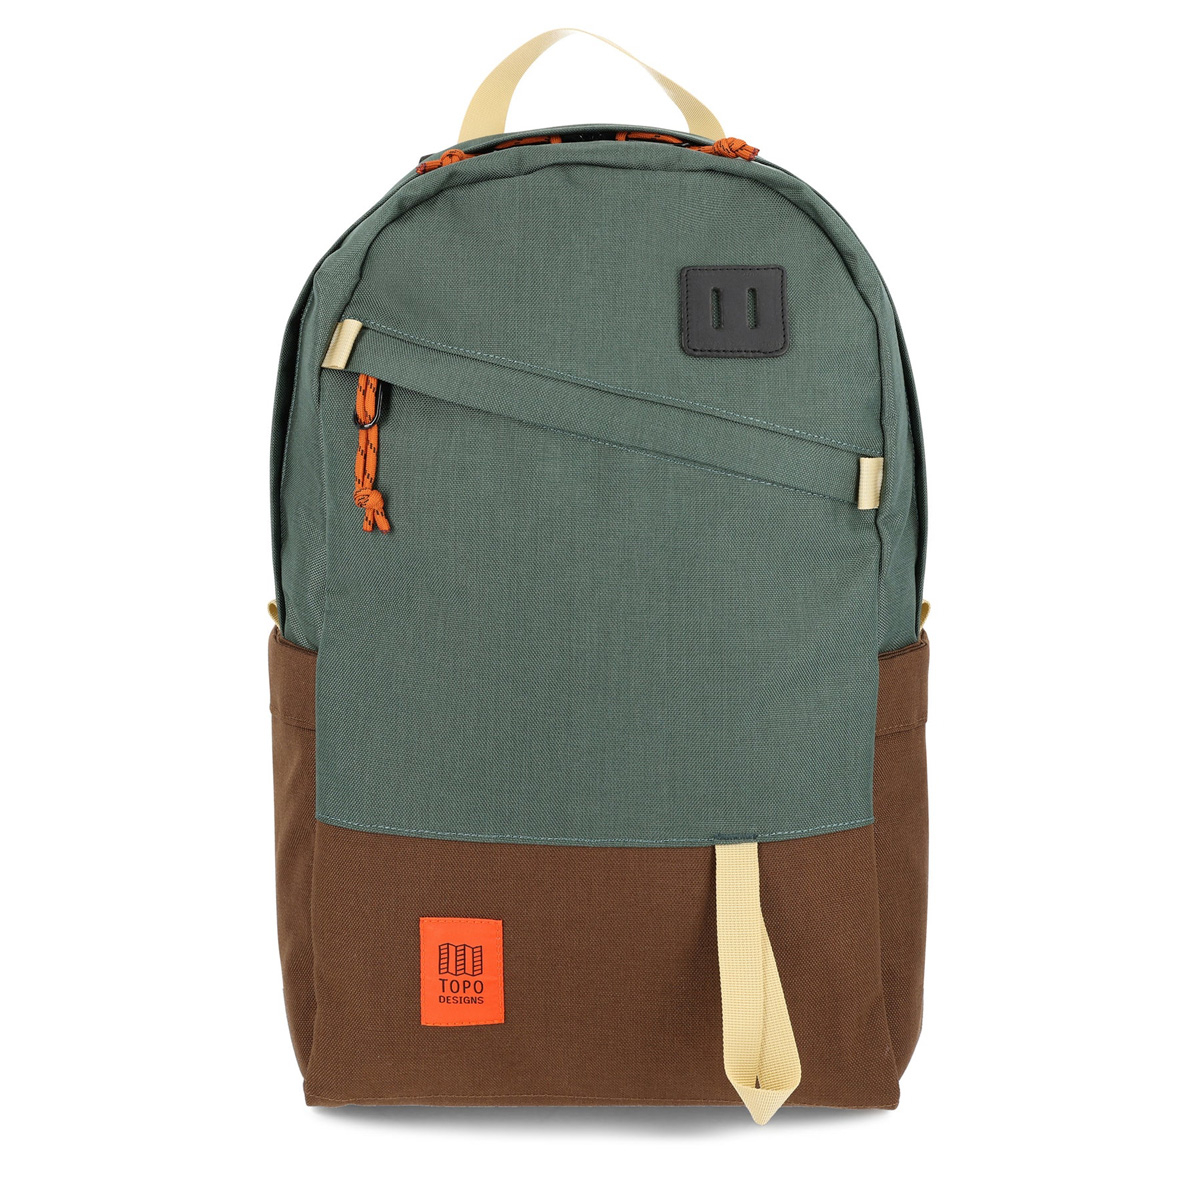 Topo Designs Daypack Classic Forest/Cocoa, zeer sterke rugzak met klassieke uitstraling, uitermate geschikt voor dagelijks gebruik